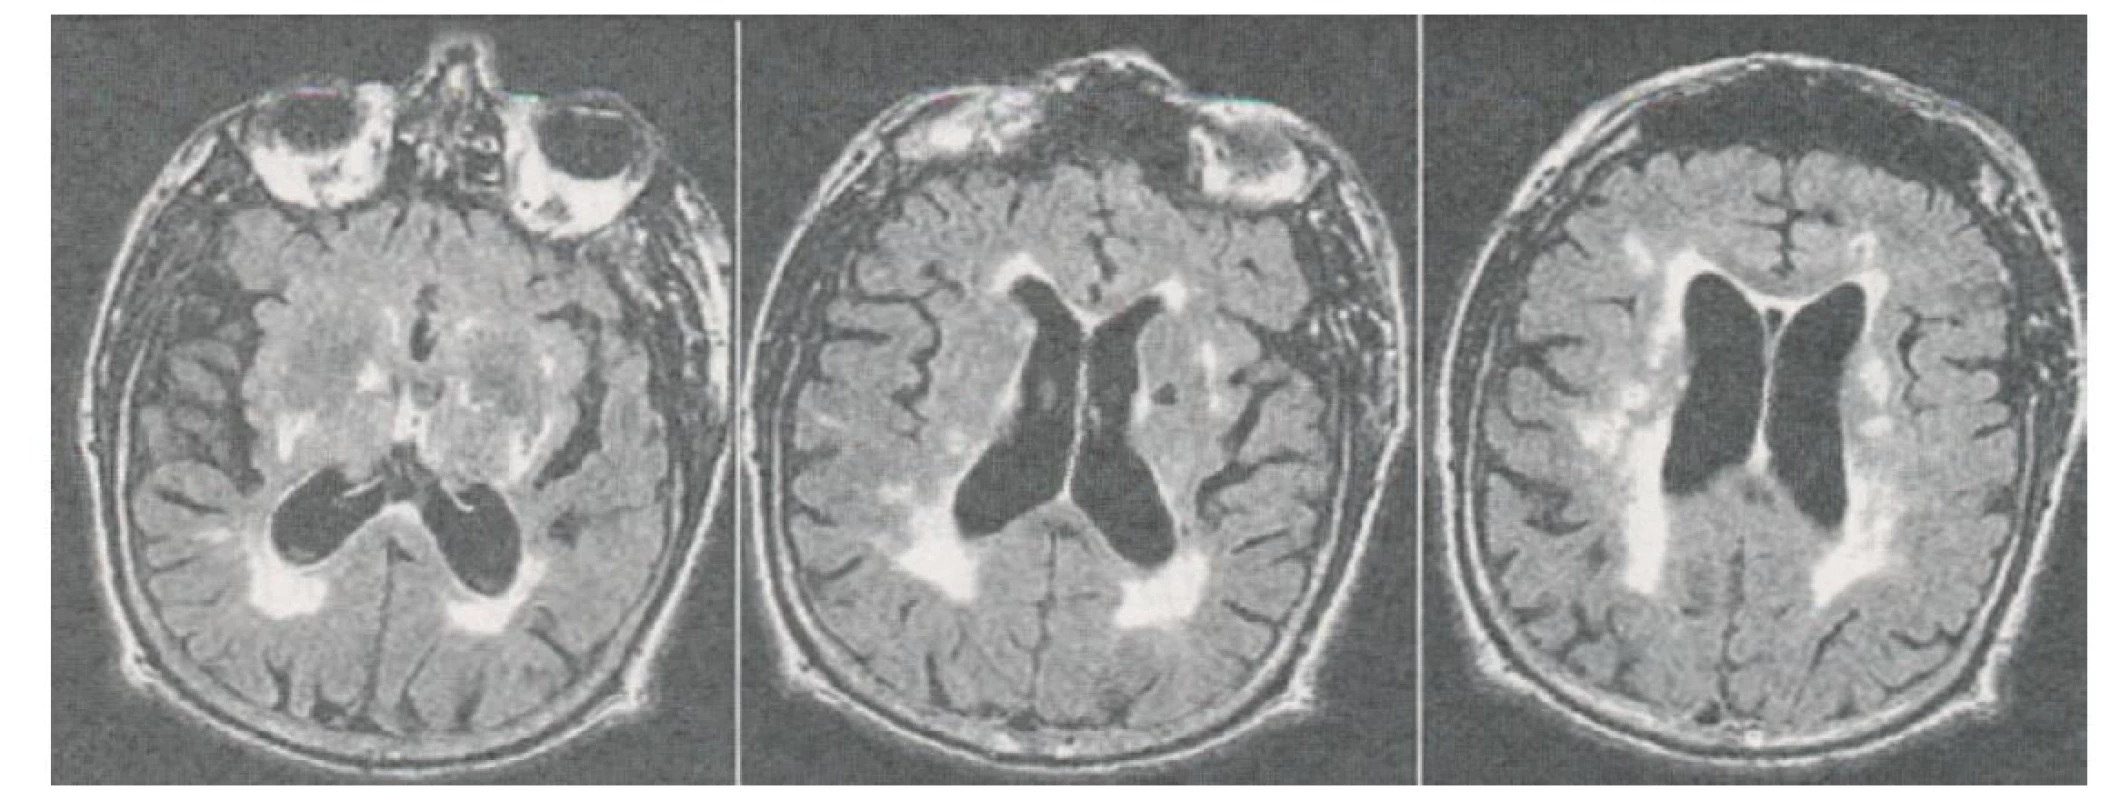 Zobrazení postupující atrofie hippocampu na MRI